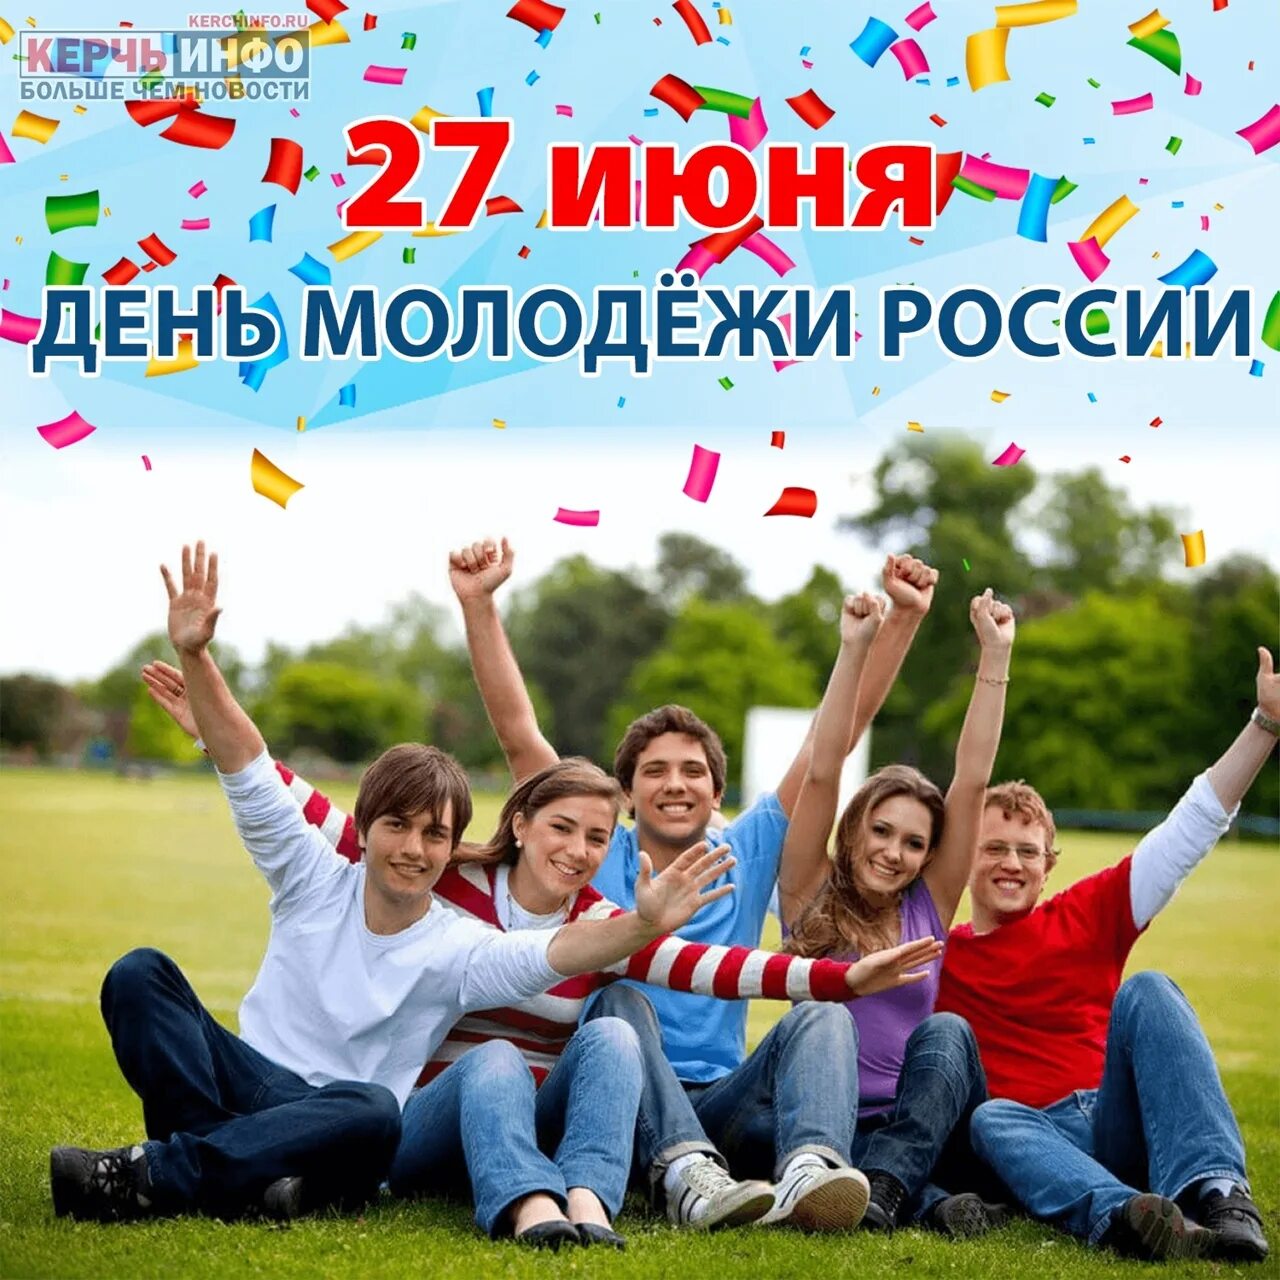 26 день молодежи. С днем молодежи. День молодёжи (Россия). С праздником молодежи. 27 Июня день молодежи России.